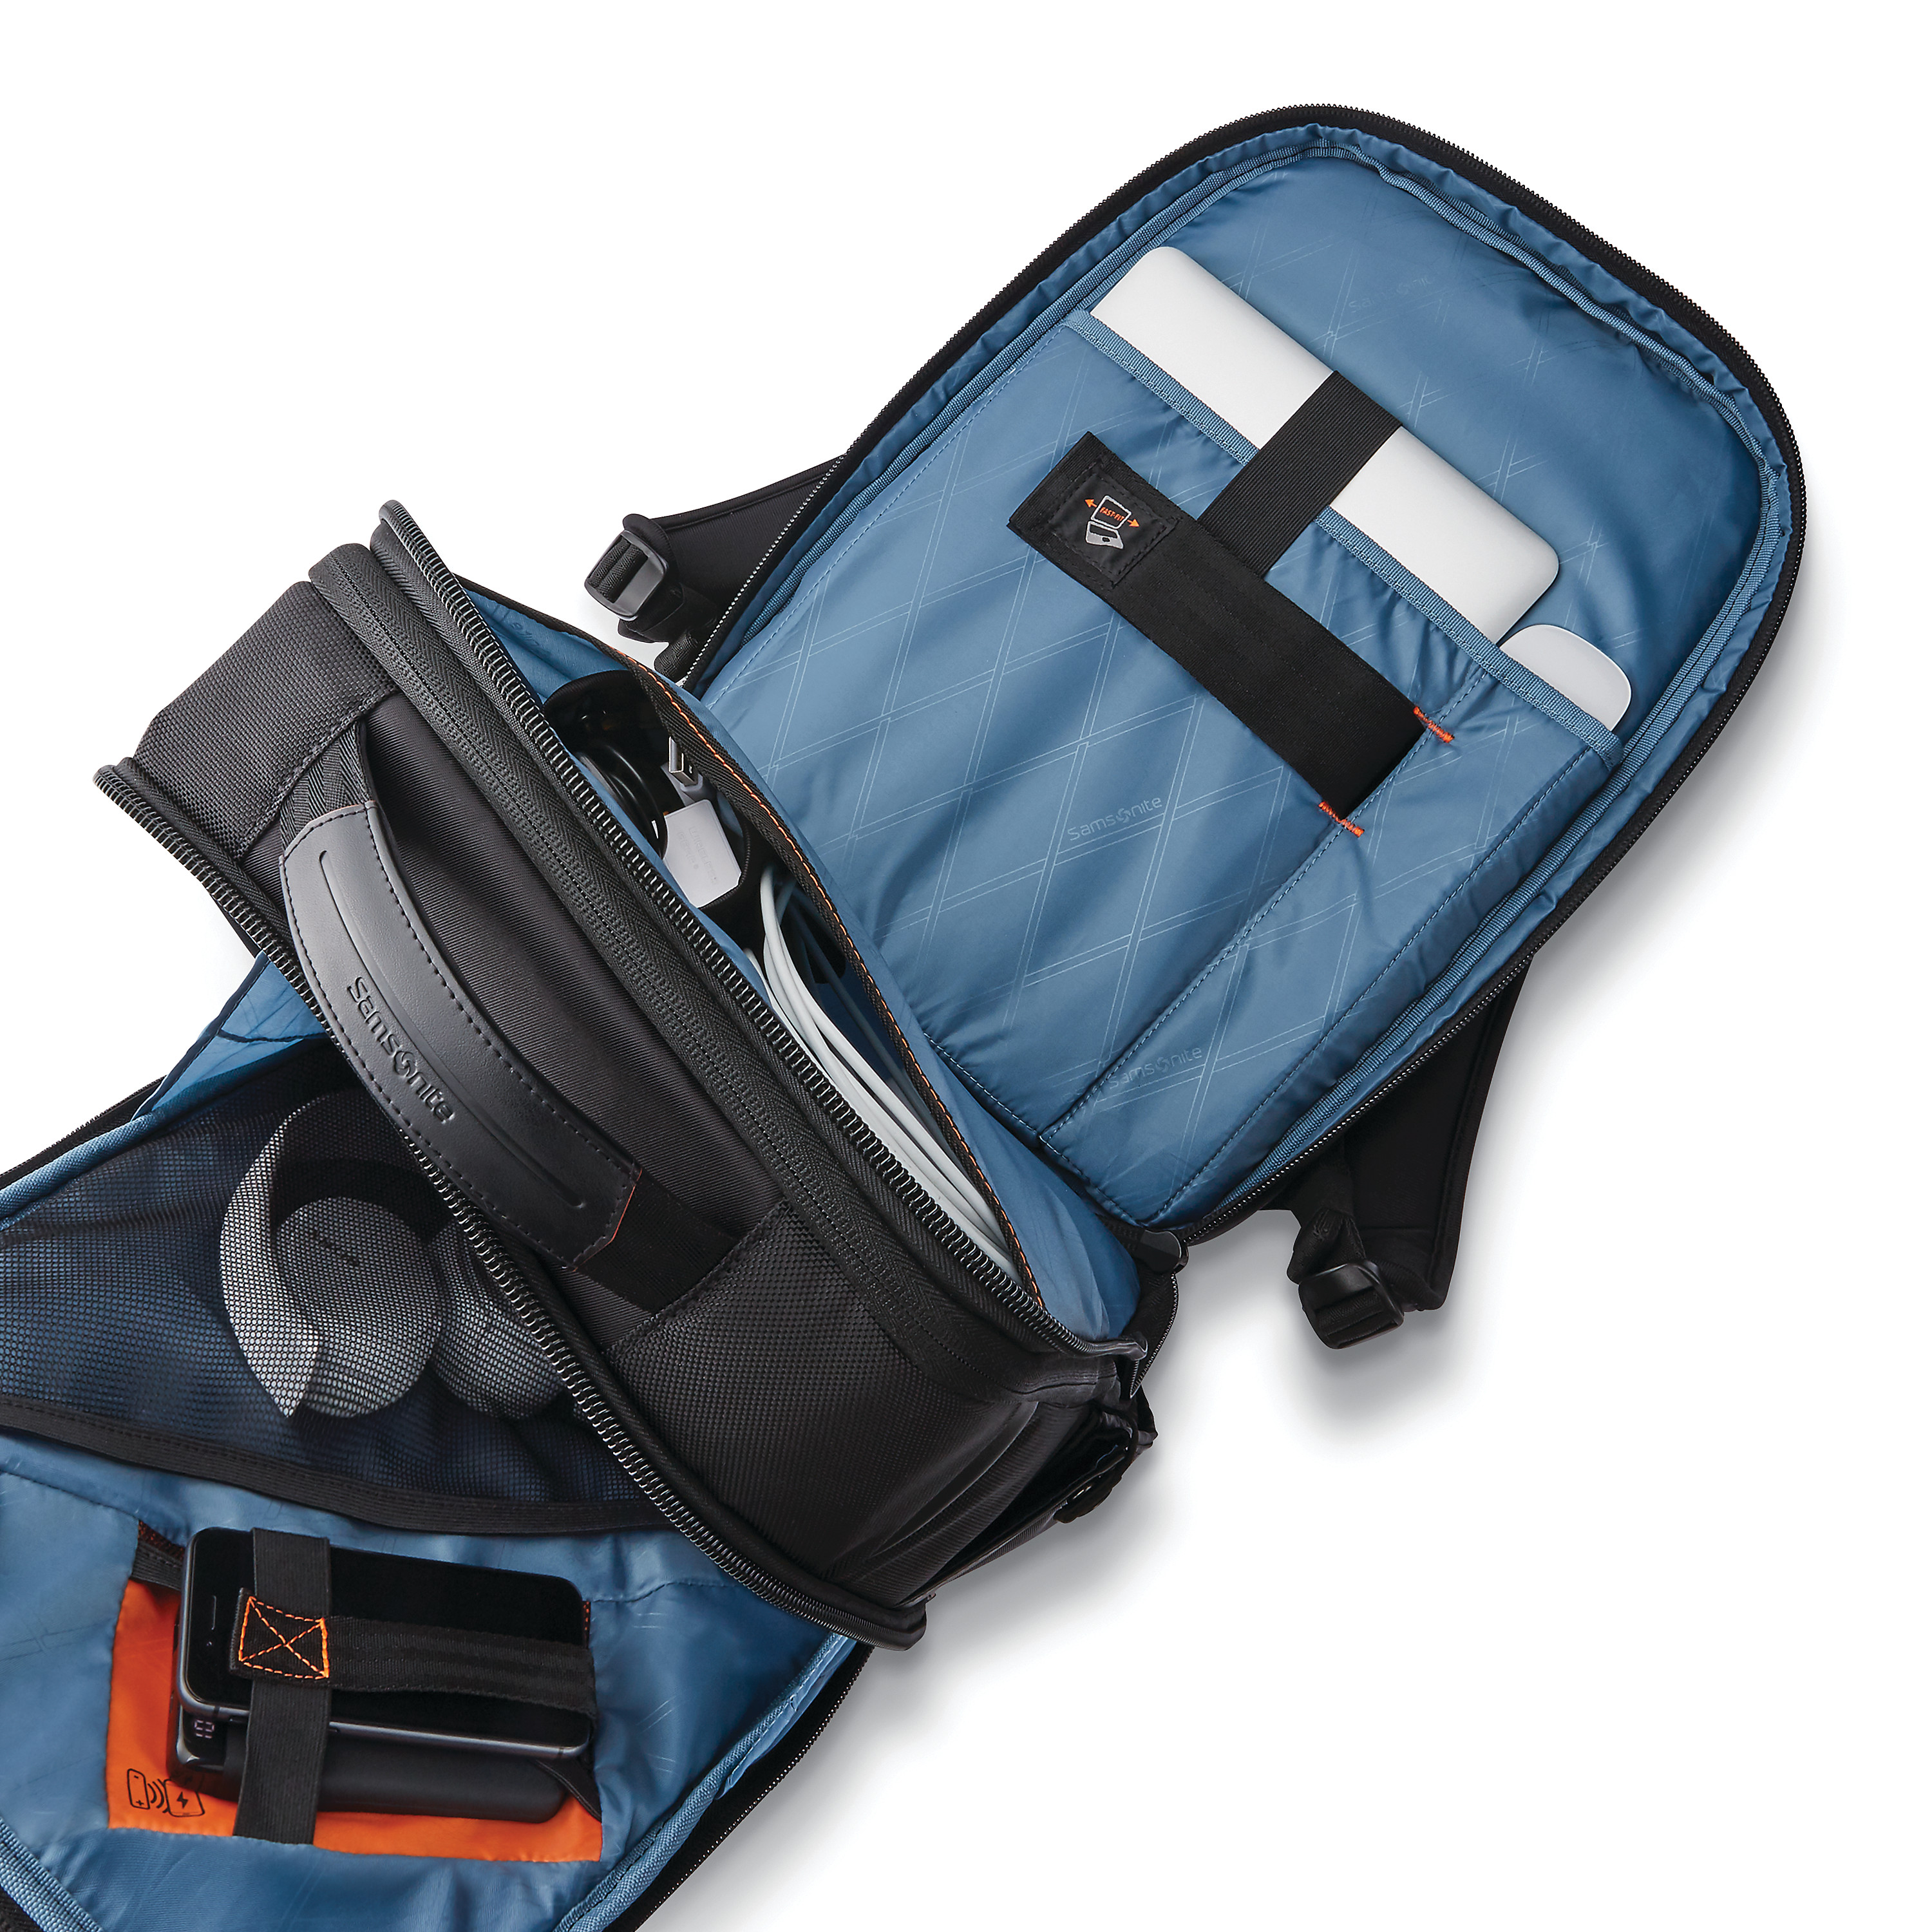 Samsonite Laptop Bags – Luggage Pros